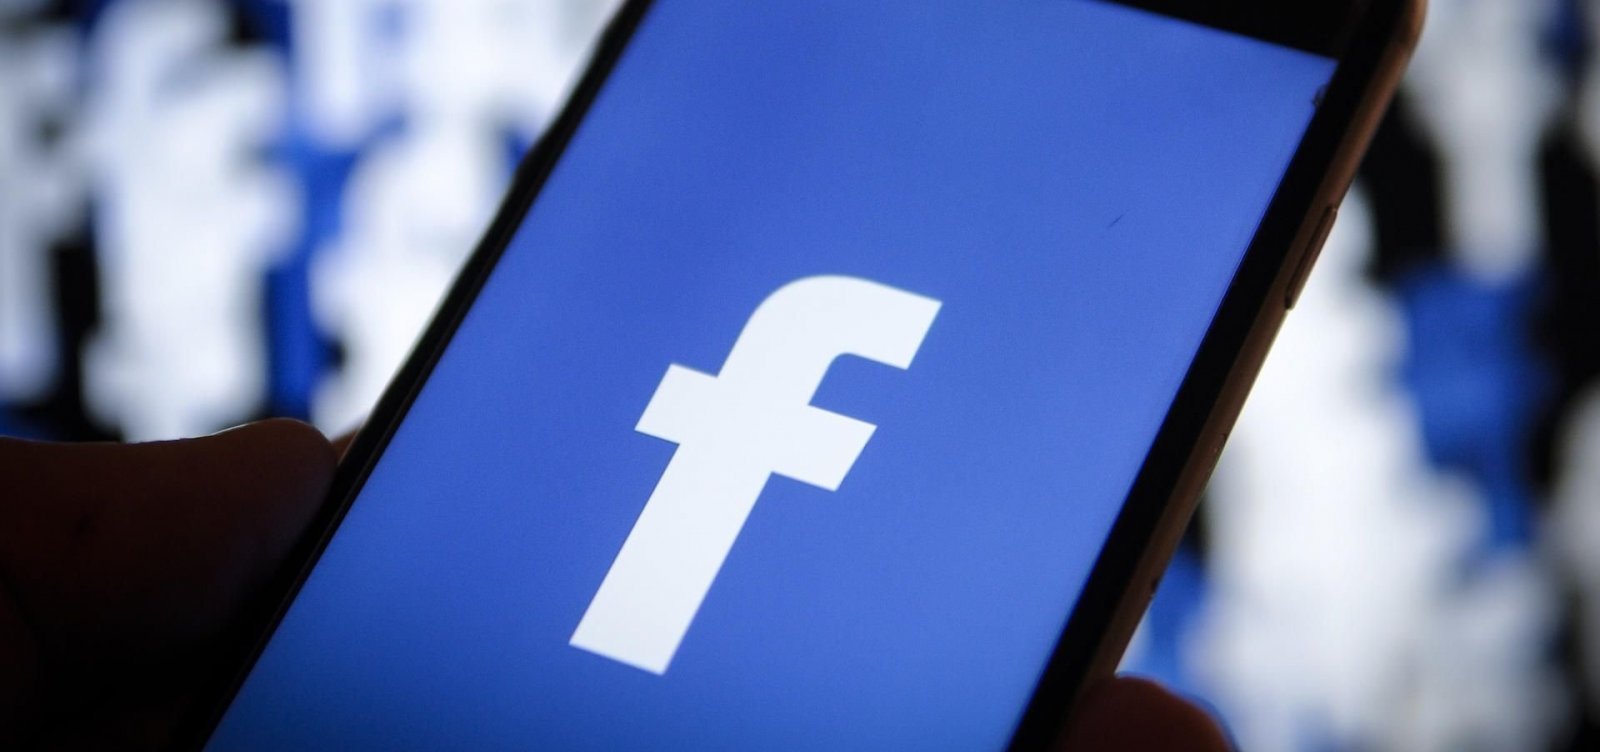 Ibama multa Facebook em R$ 10 mi por ignorar tráfico ilegal de animais na rede